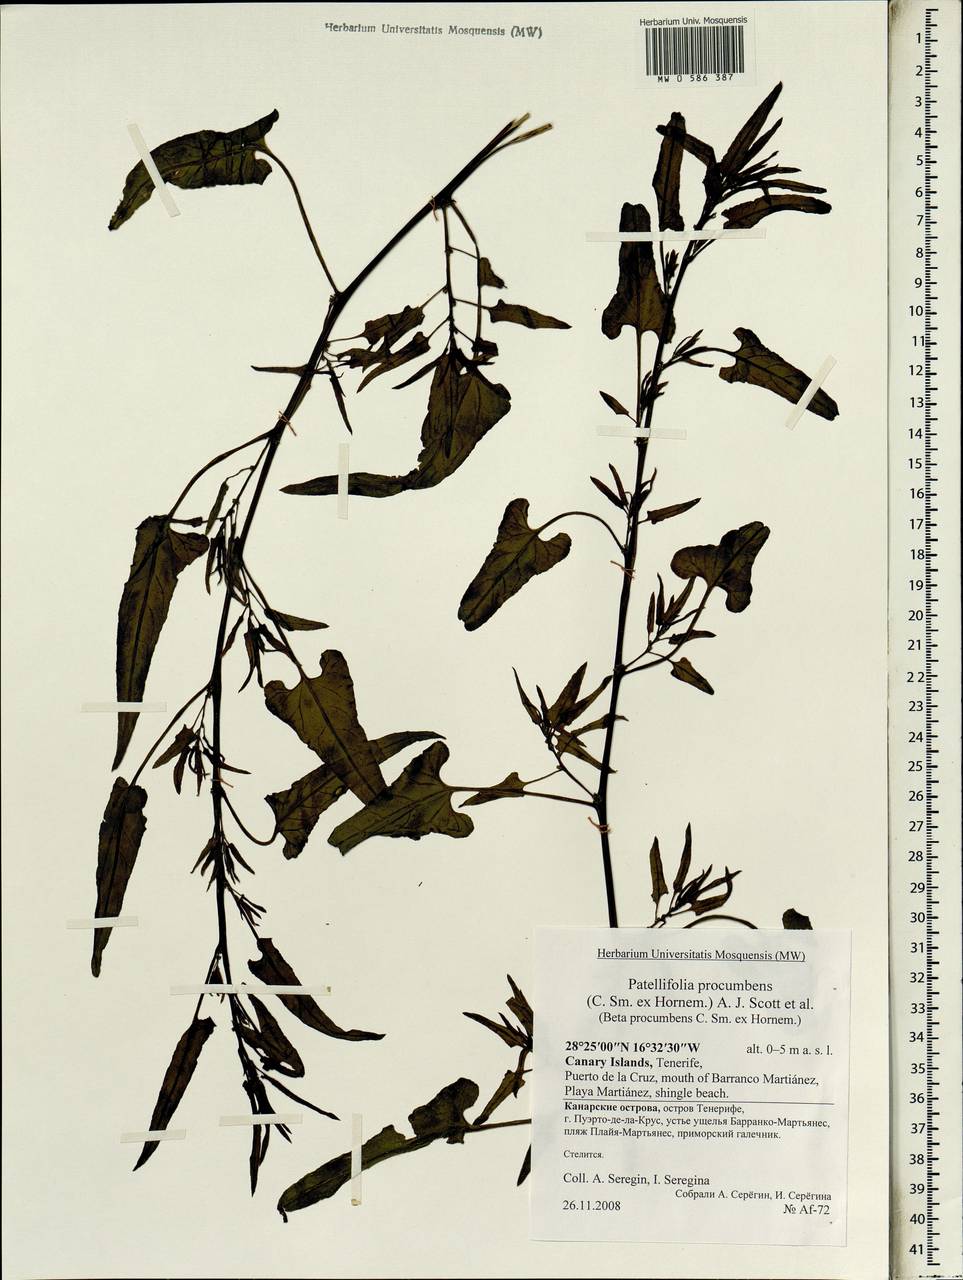 Patellifolia procumbens (C. Sm. ex Hornem.) A. J. Scott, Ford-Lloyd & J. T, Африка (AFR) (Испания)